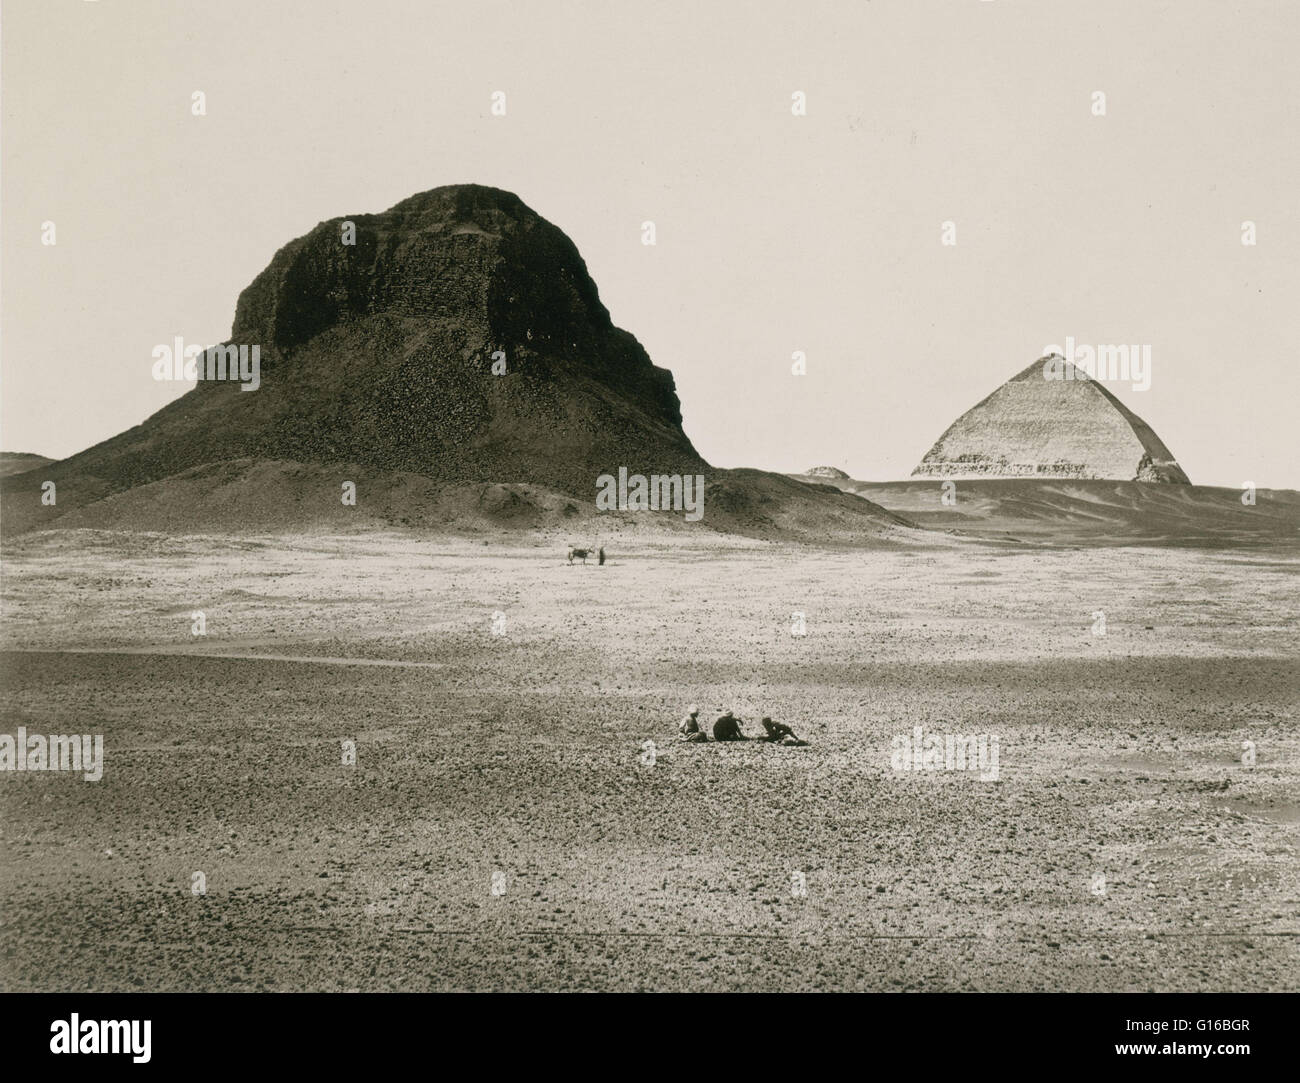 Didascalia: " Piramidi di Dahshoor, dall'Oriente, 1857, fotografata da Francesco Firth." piegato la piramide è una antica piramide egizia situato presso il Royal necropoli di Dahshur, costruito sotto il regno antico faraone Sneferu (circa 2600 AC). Un esempio unico Foto Stock